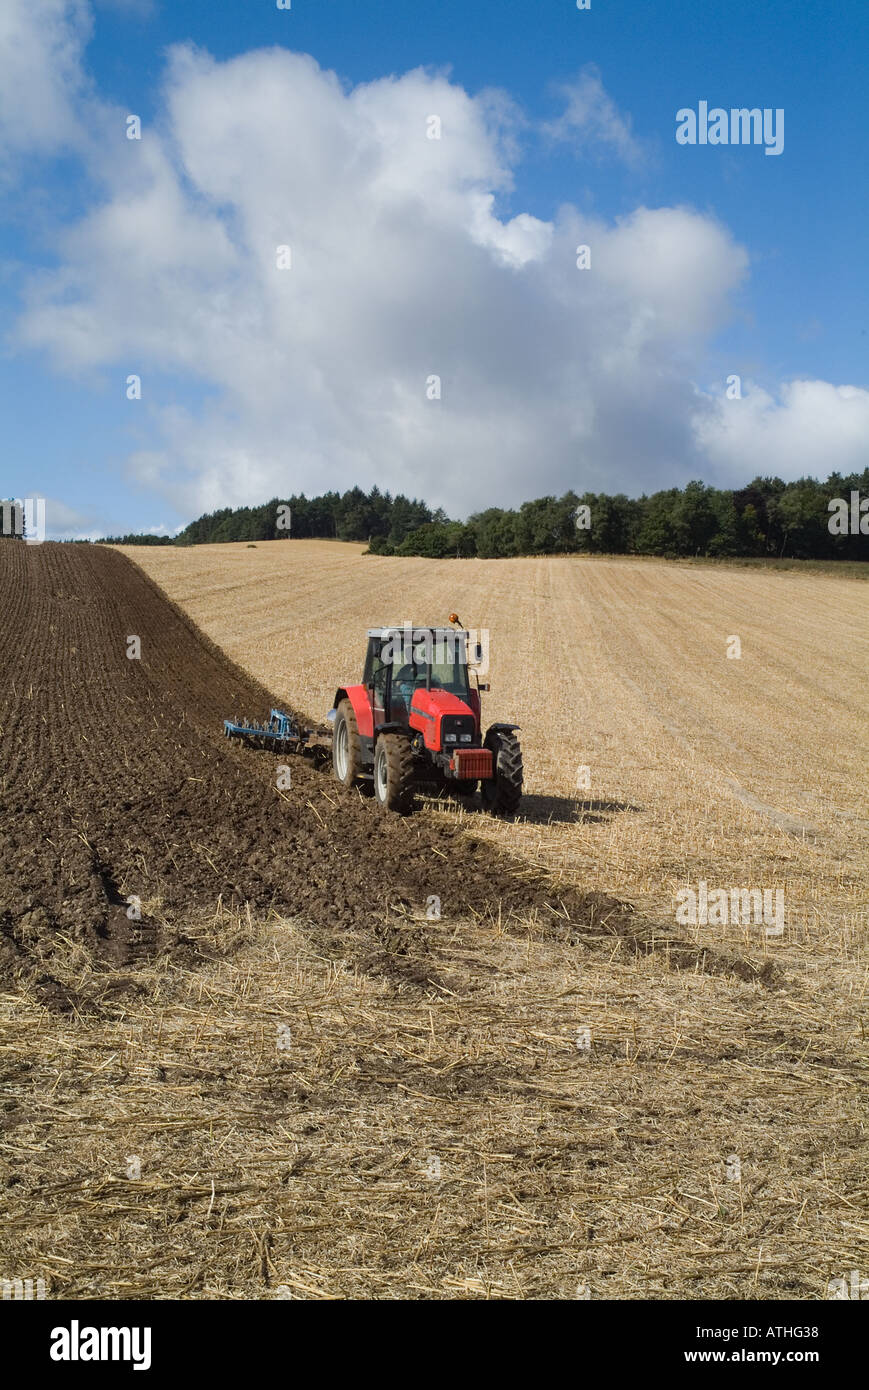 dh Massey Ferguson LABOURAGE des tracteurs PERTHSHIRE Red labourage des champs de chaume Écosse ferme l'agriculture britannique dans les terres agricoles écossaises Banque D'Images